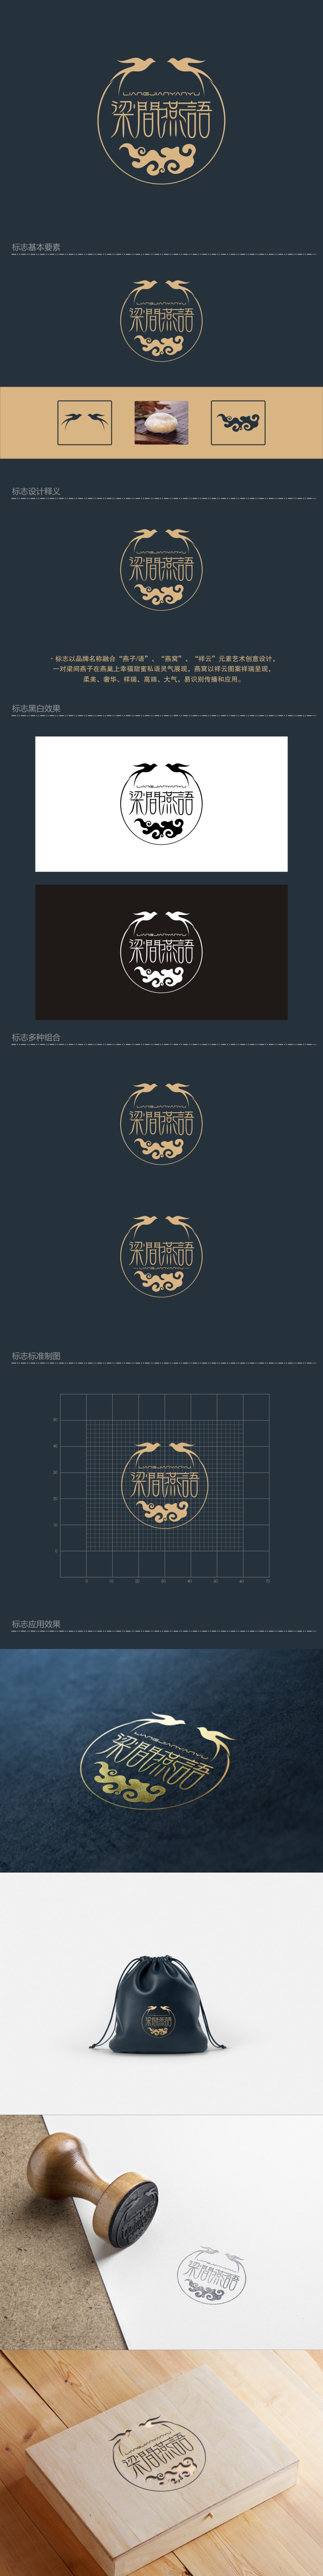 陈国伟的梁间燕语食品销售logo设计